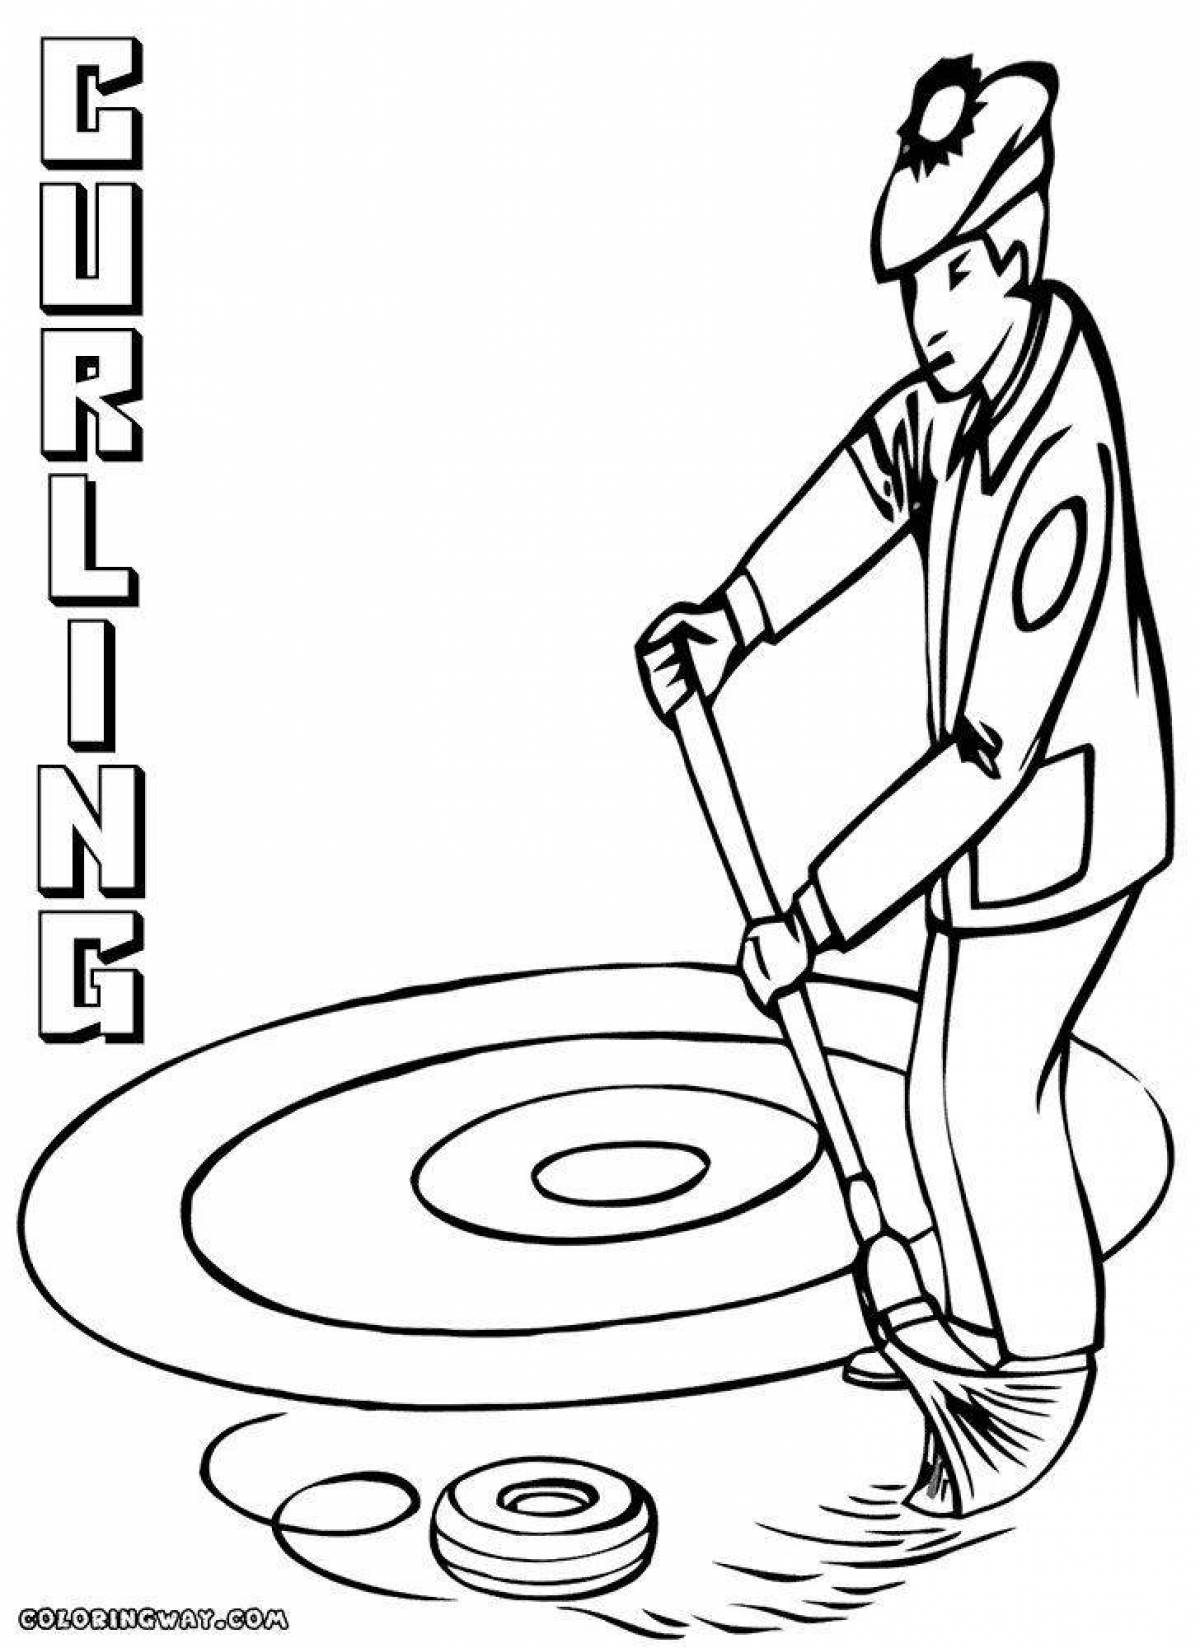 Fascinating curling coloring book